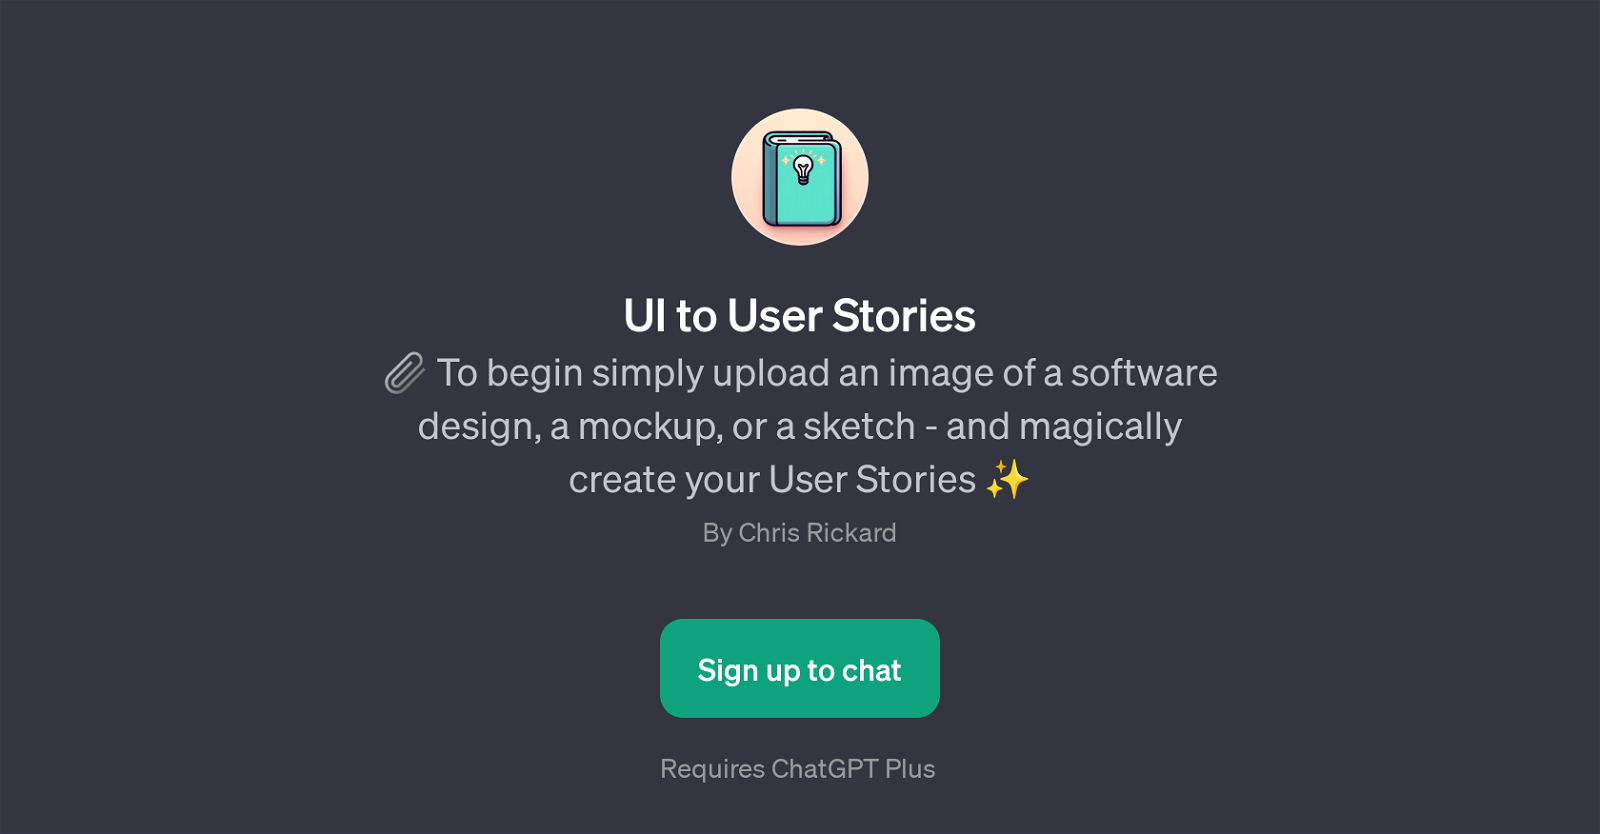 UI to User Stories website